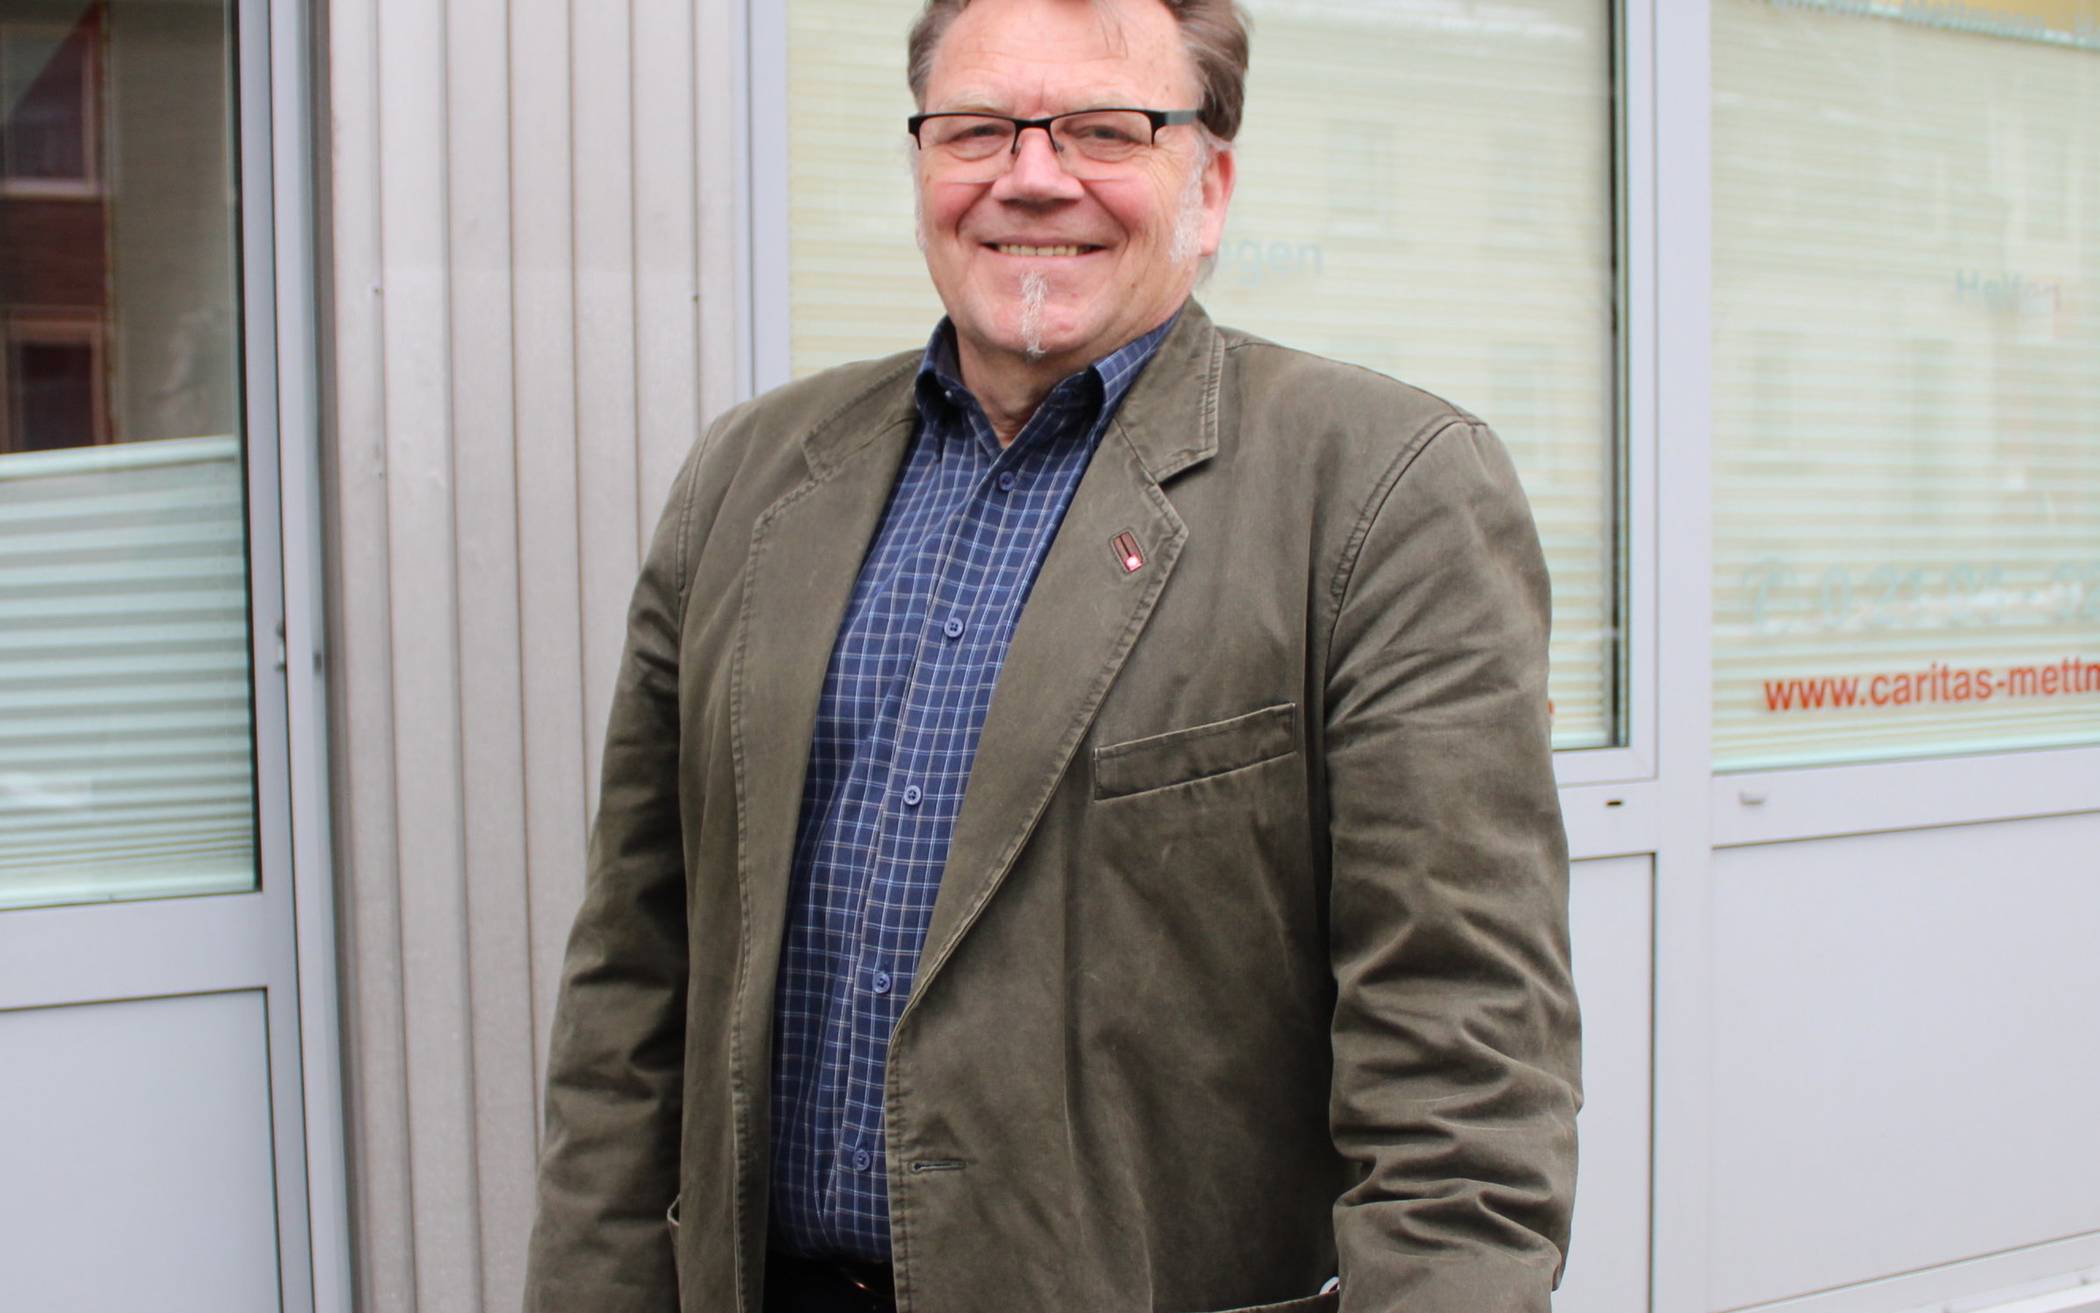  Diplom-Sozialpädagoge Thomas Rasch fungiert seit dem Jahr 2000 als Bereichsleiter der Caritas im Kreis. Angefangen hat er 1990 in der Suchtberatungsstelle. 